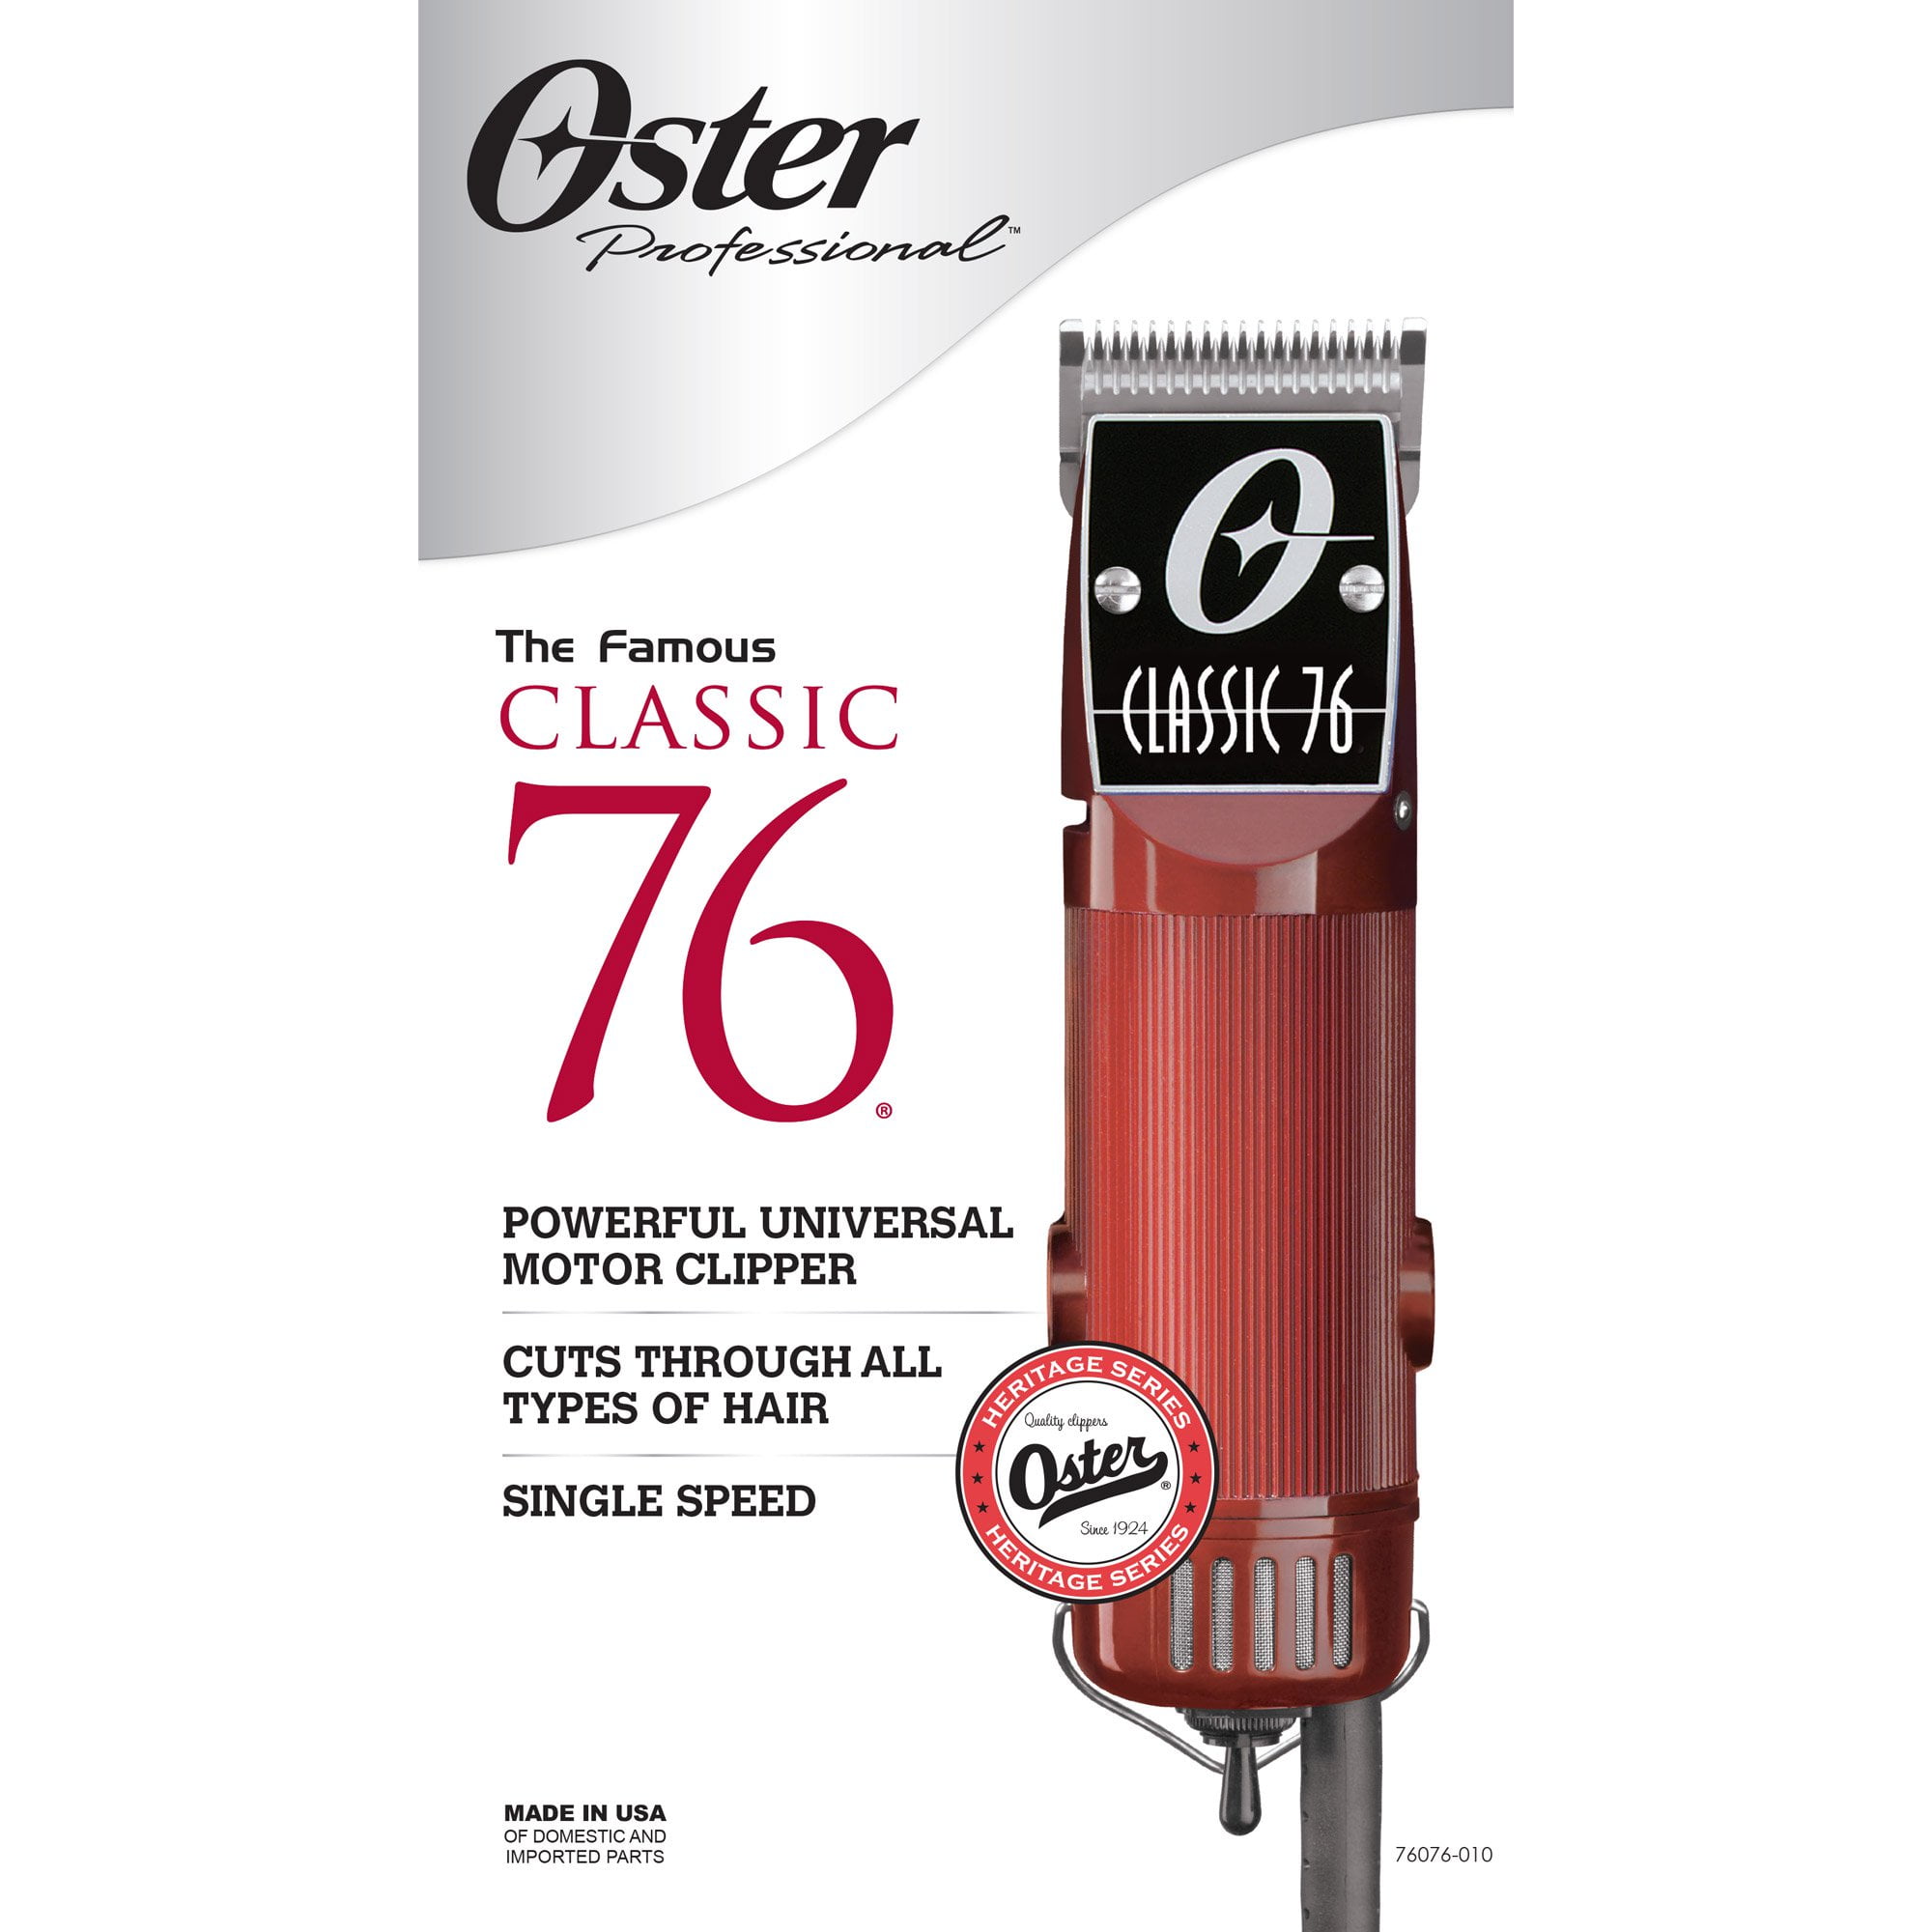 1.1 oster classic 76 clipper